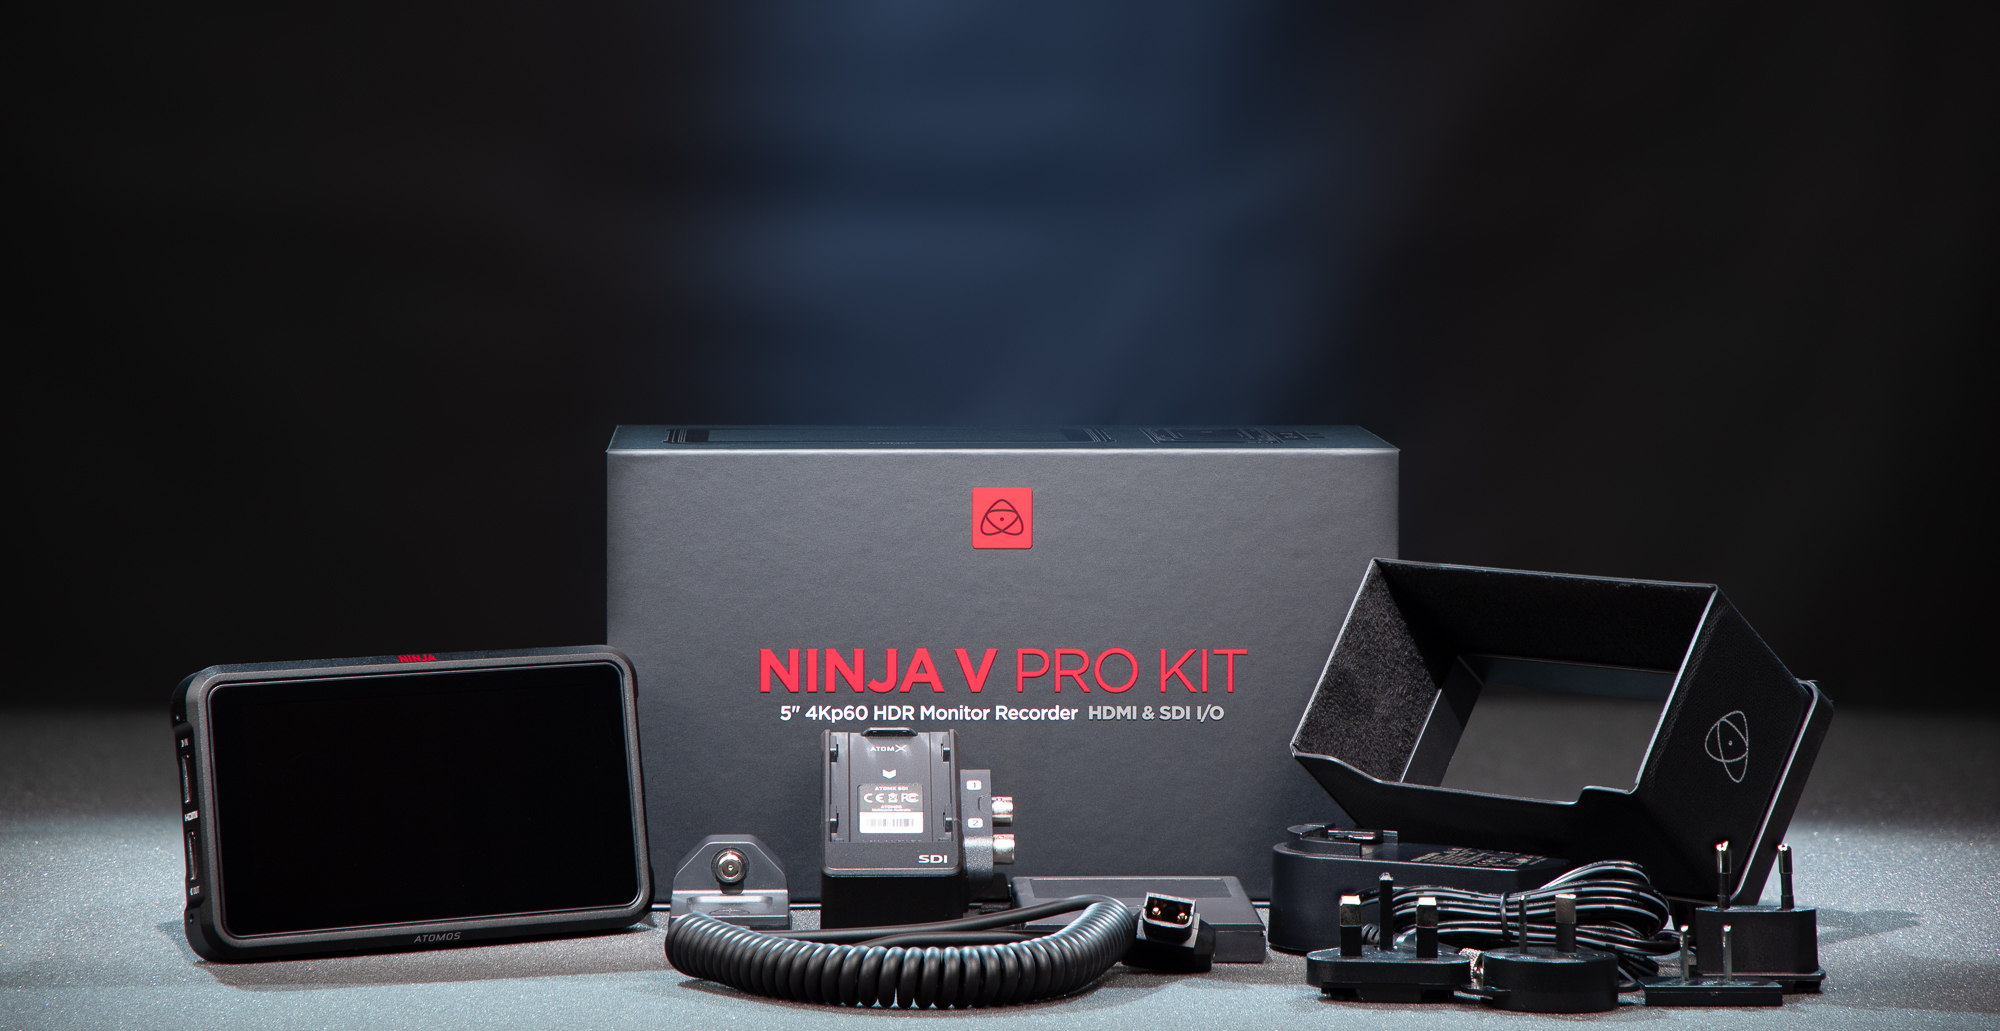 Atomos Copy of Ninja V Pro Kit with SDI RAW Pre-Activated